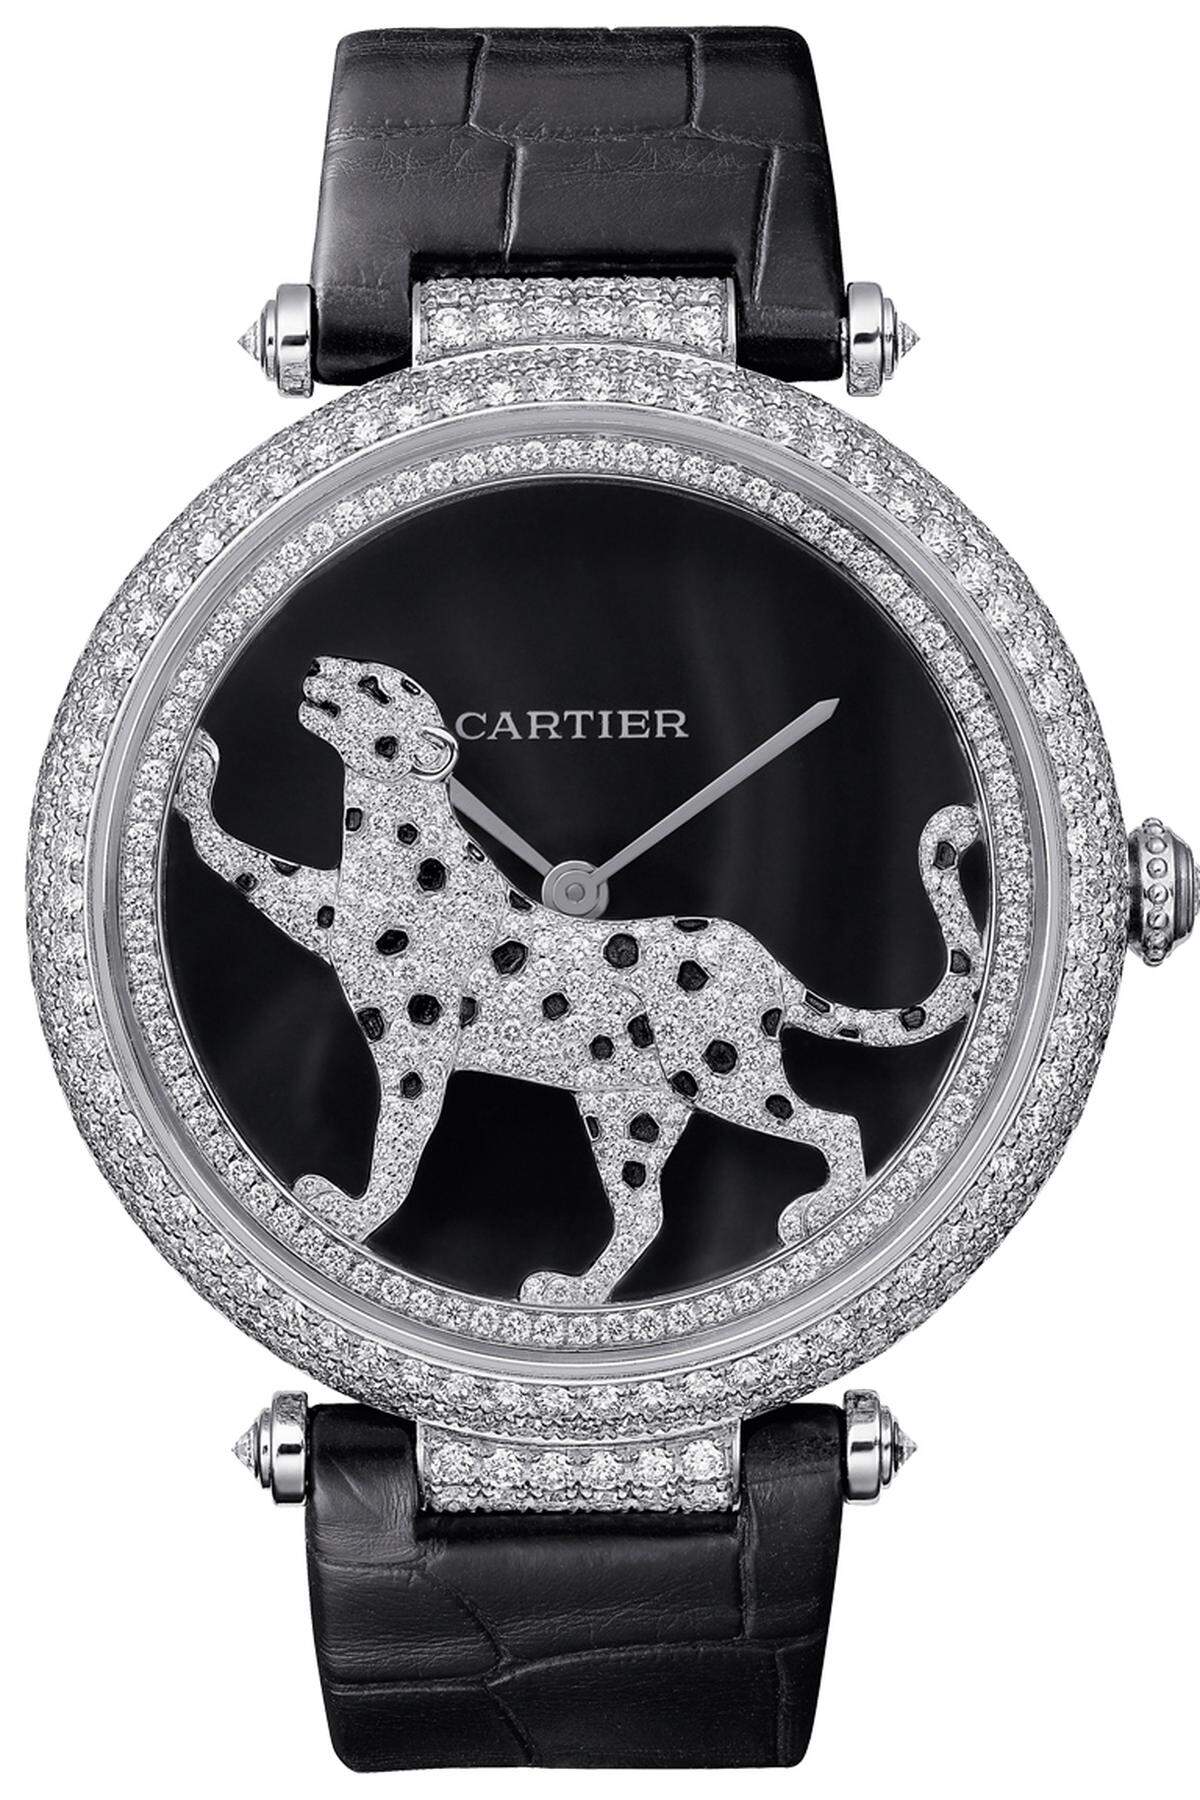 „Promenade d’une Panthère“: Der Panther fungiert als Aufzugsrotor des Cartier-Uhrwerks. Bei jeder Handbewegung dreht, beziehungsweise promeniert er funkelnd auf dem Zifferblatt und zieht dabei die Uhr auf.